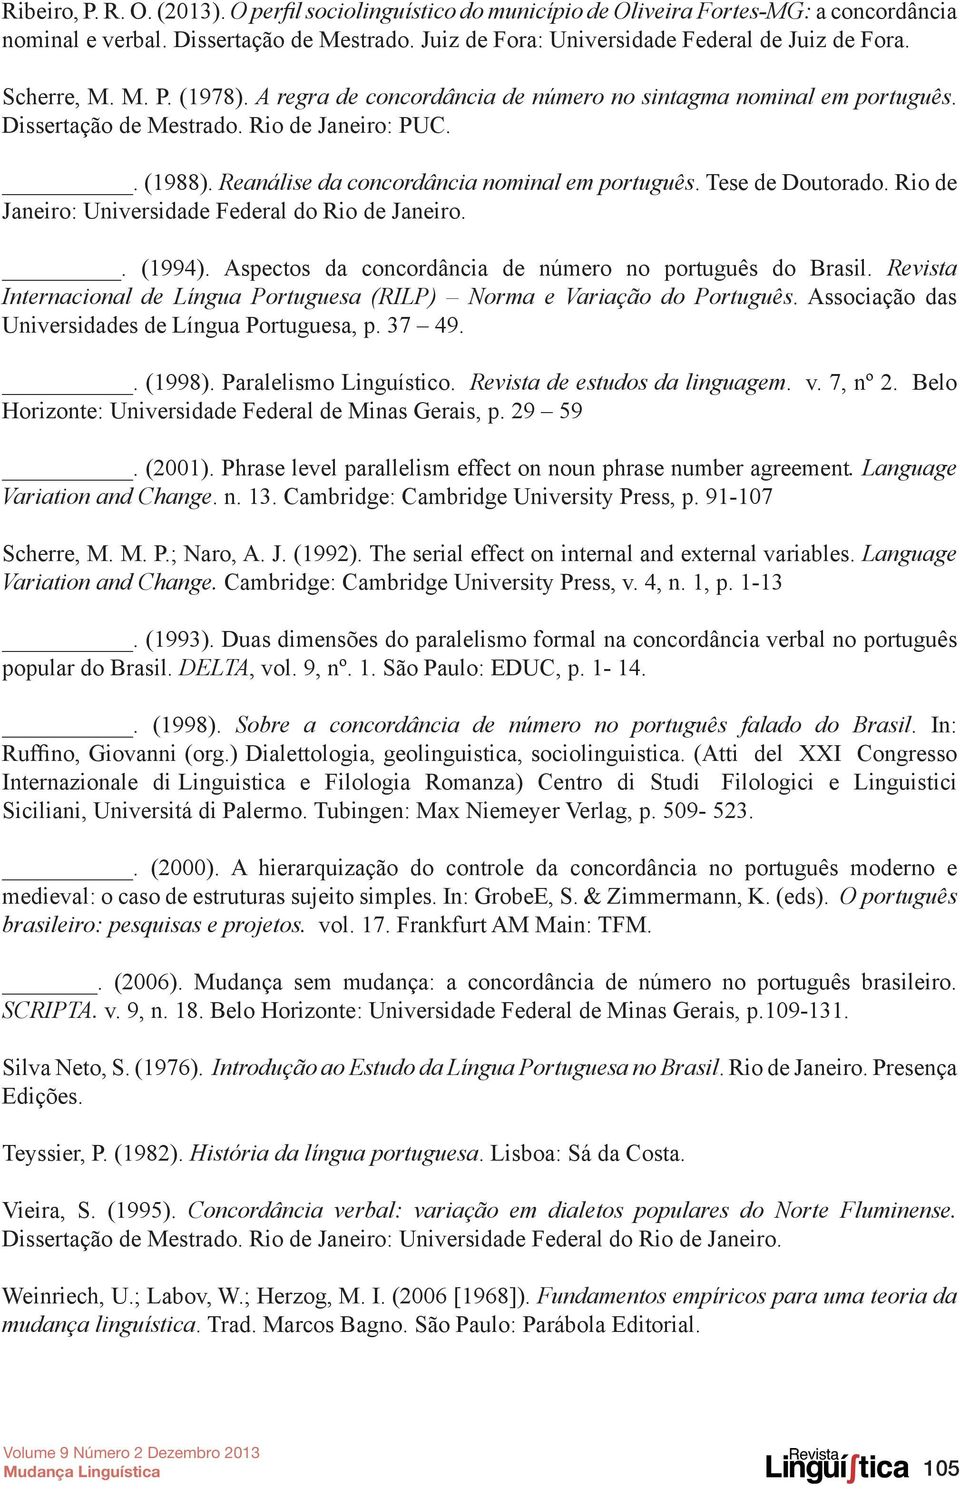 Tese de Doutorado. Rio de Janeiro: Universidade Federal do Rio de Janeiro.. (1994). Aspectos da concordância de número no português do Brasil.